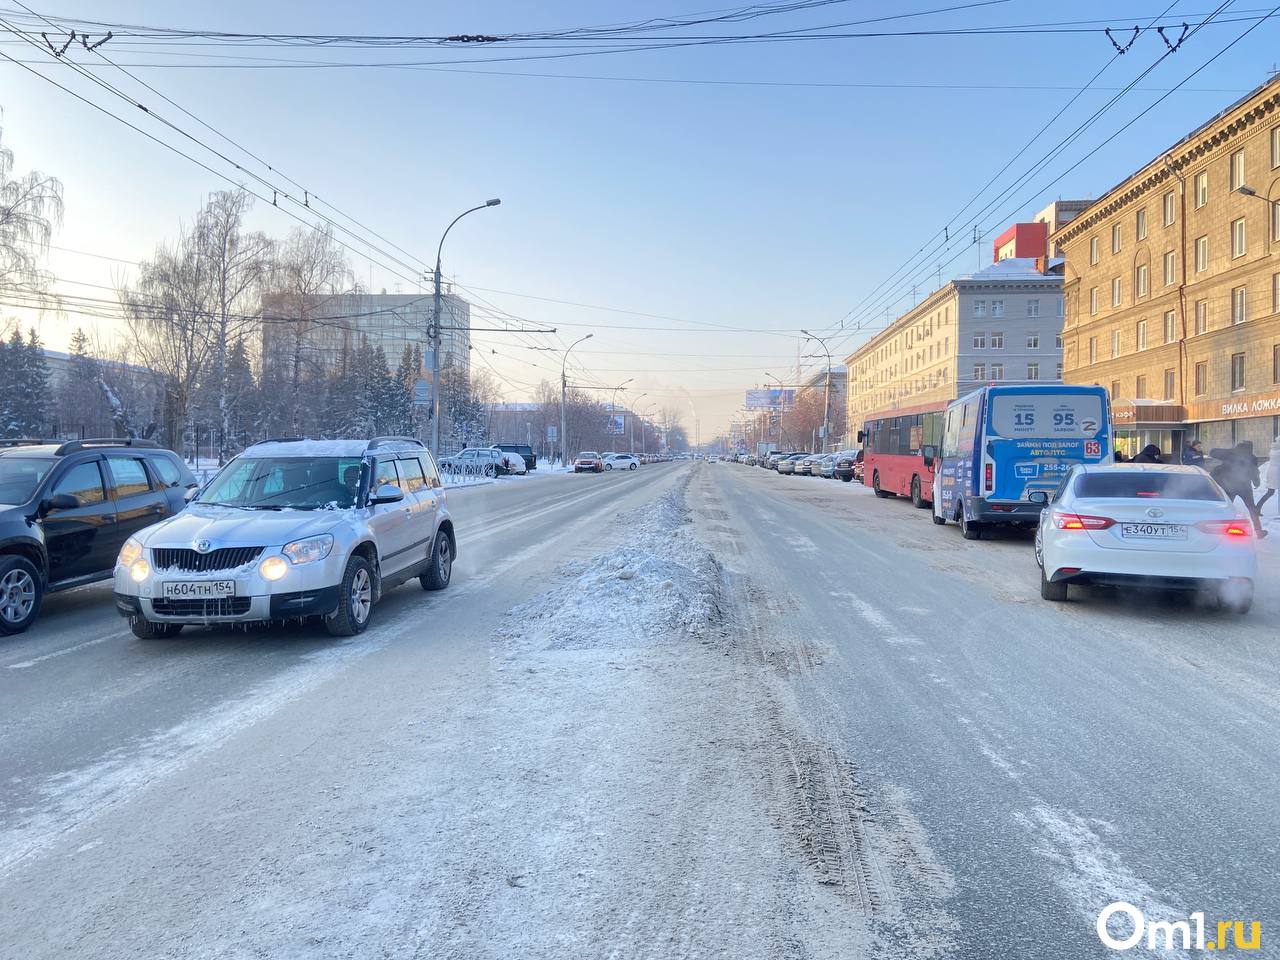 Дороги не чистят от снега. Ледяные дороги. Сугробы на дороге. Заснеженный район. Снег в Новосибирске.